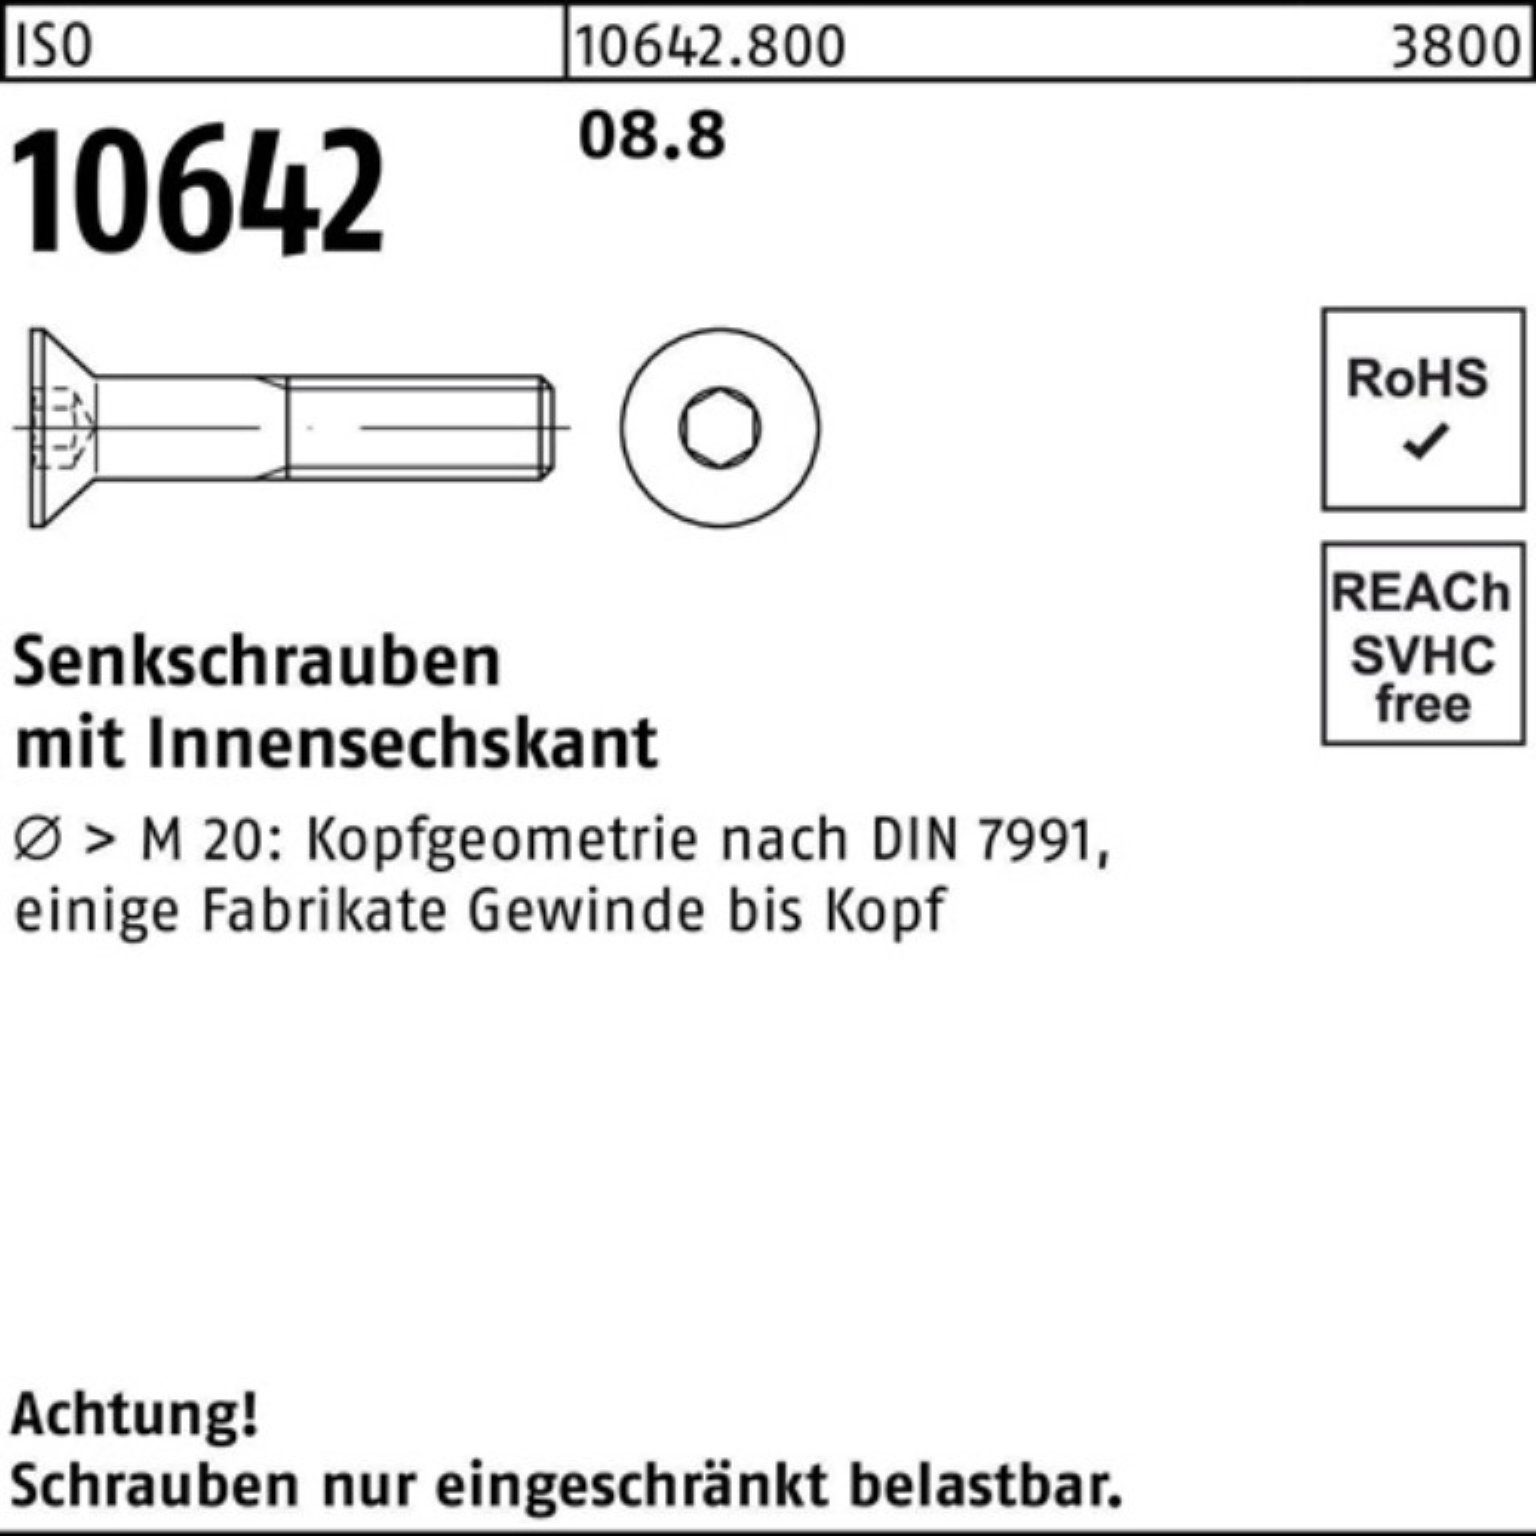 Senkschraube 8 10642 ISO 1 Reyher Senkschraube 100er 100 ISO 8.8 Stück M4x Pack Innen-6kt